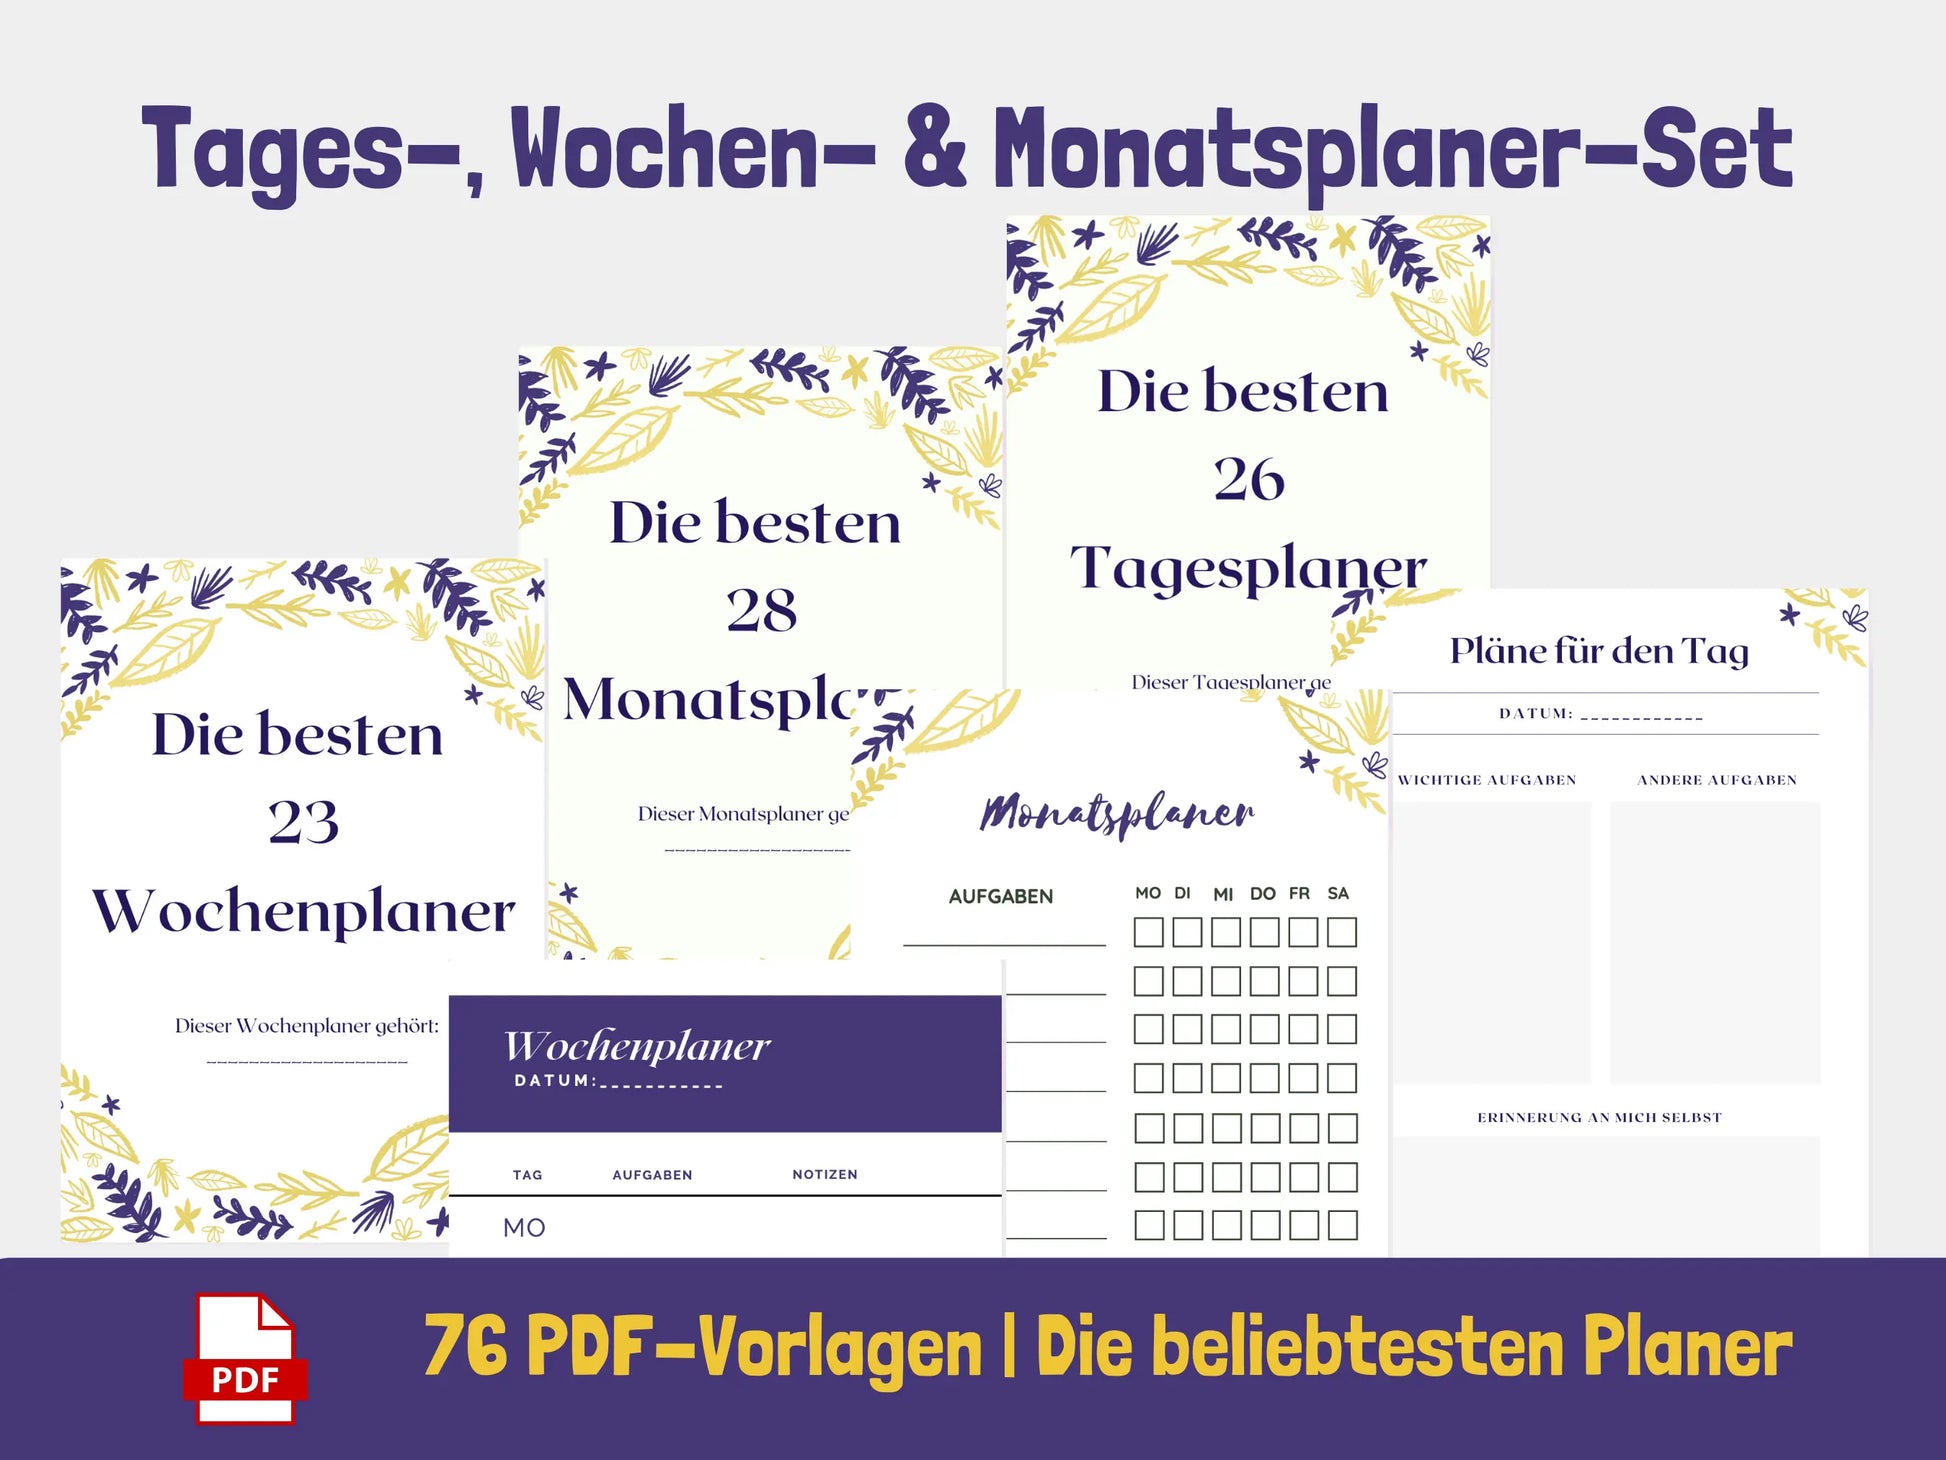 Tages-, Wochen-, Monatsplaner: 76 Seiten PDF AndreasJansen Vorlage